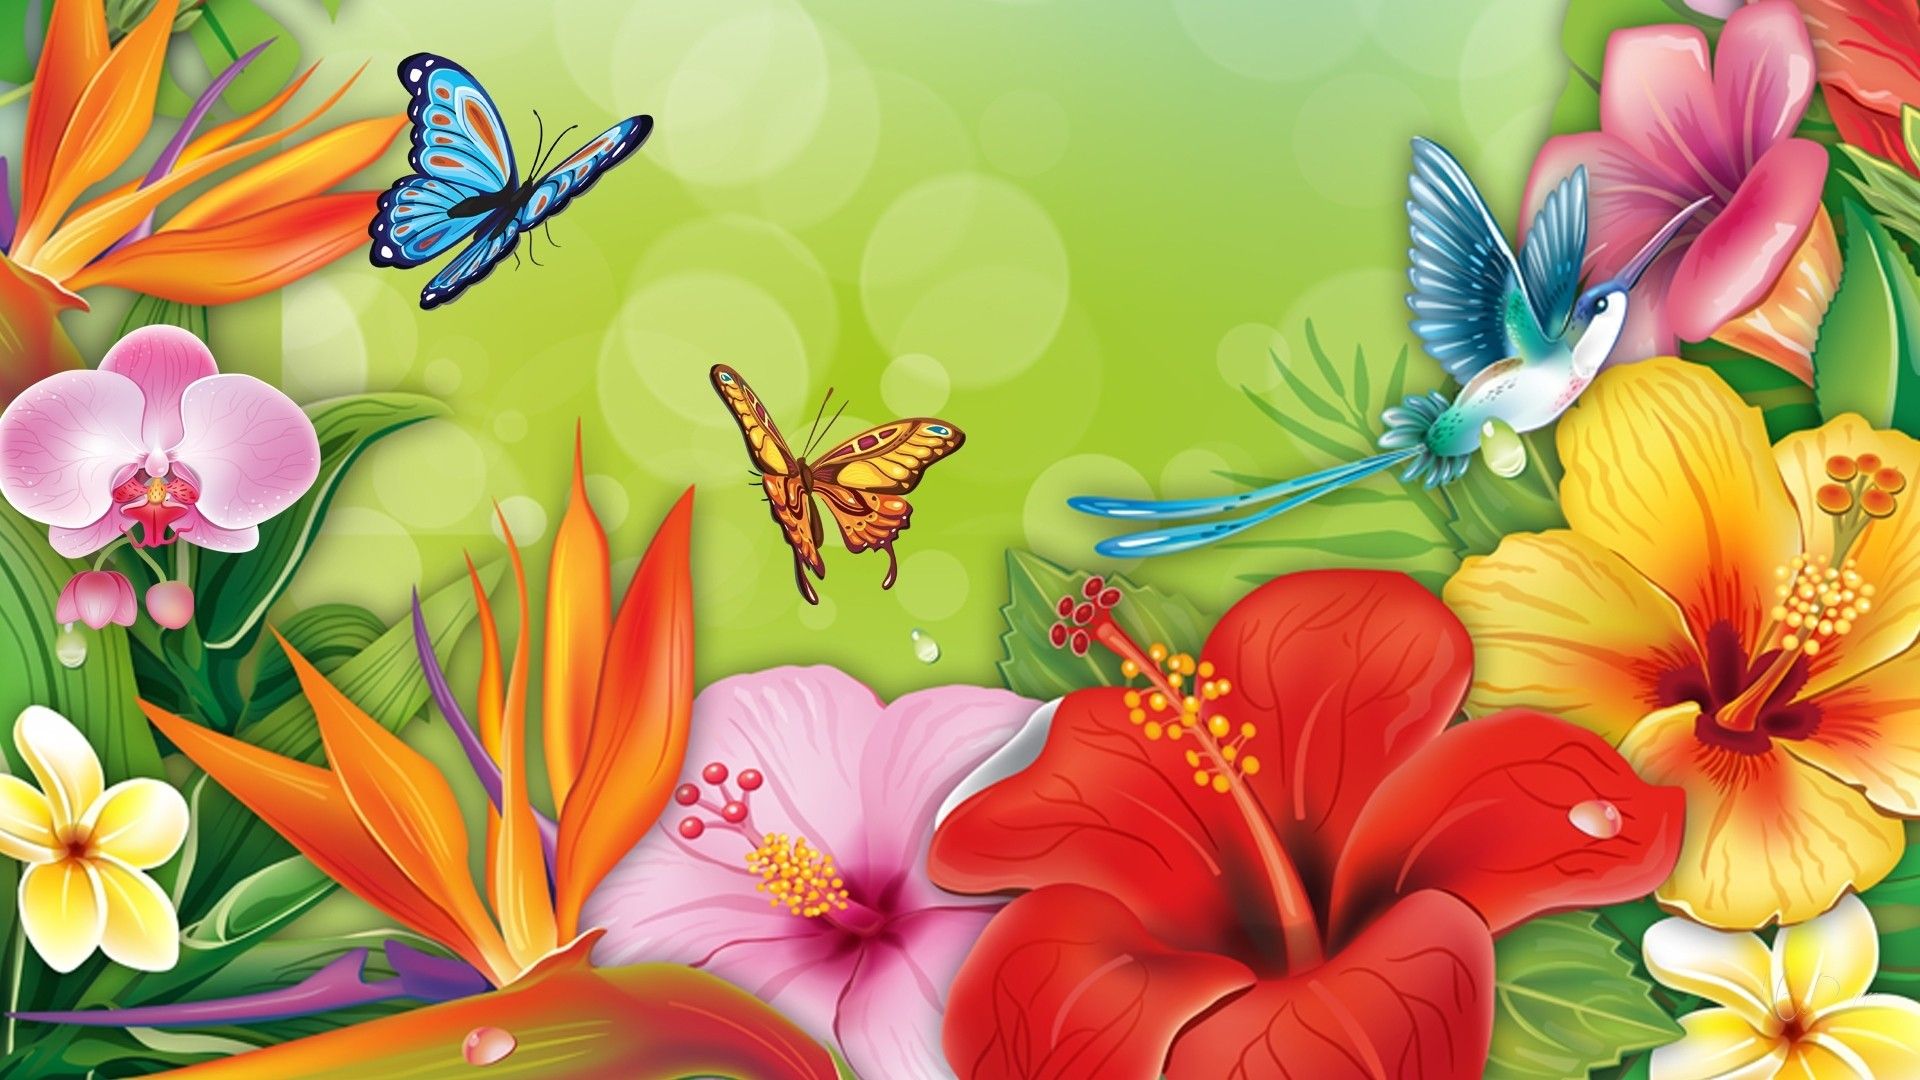 Flowers and Butterflies HD Wallpaper